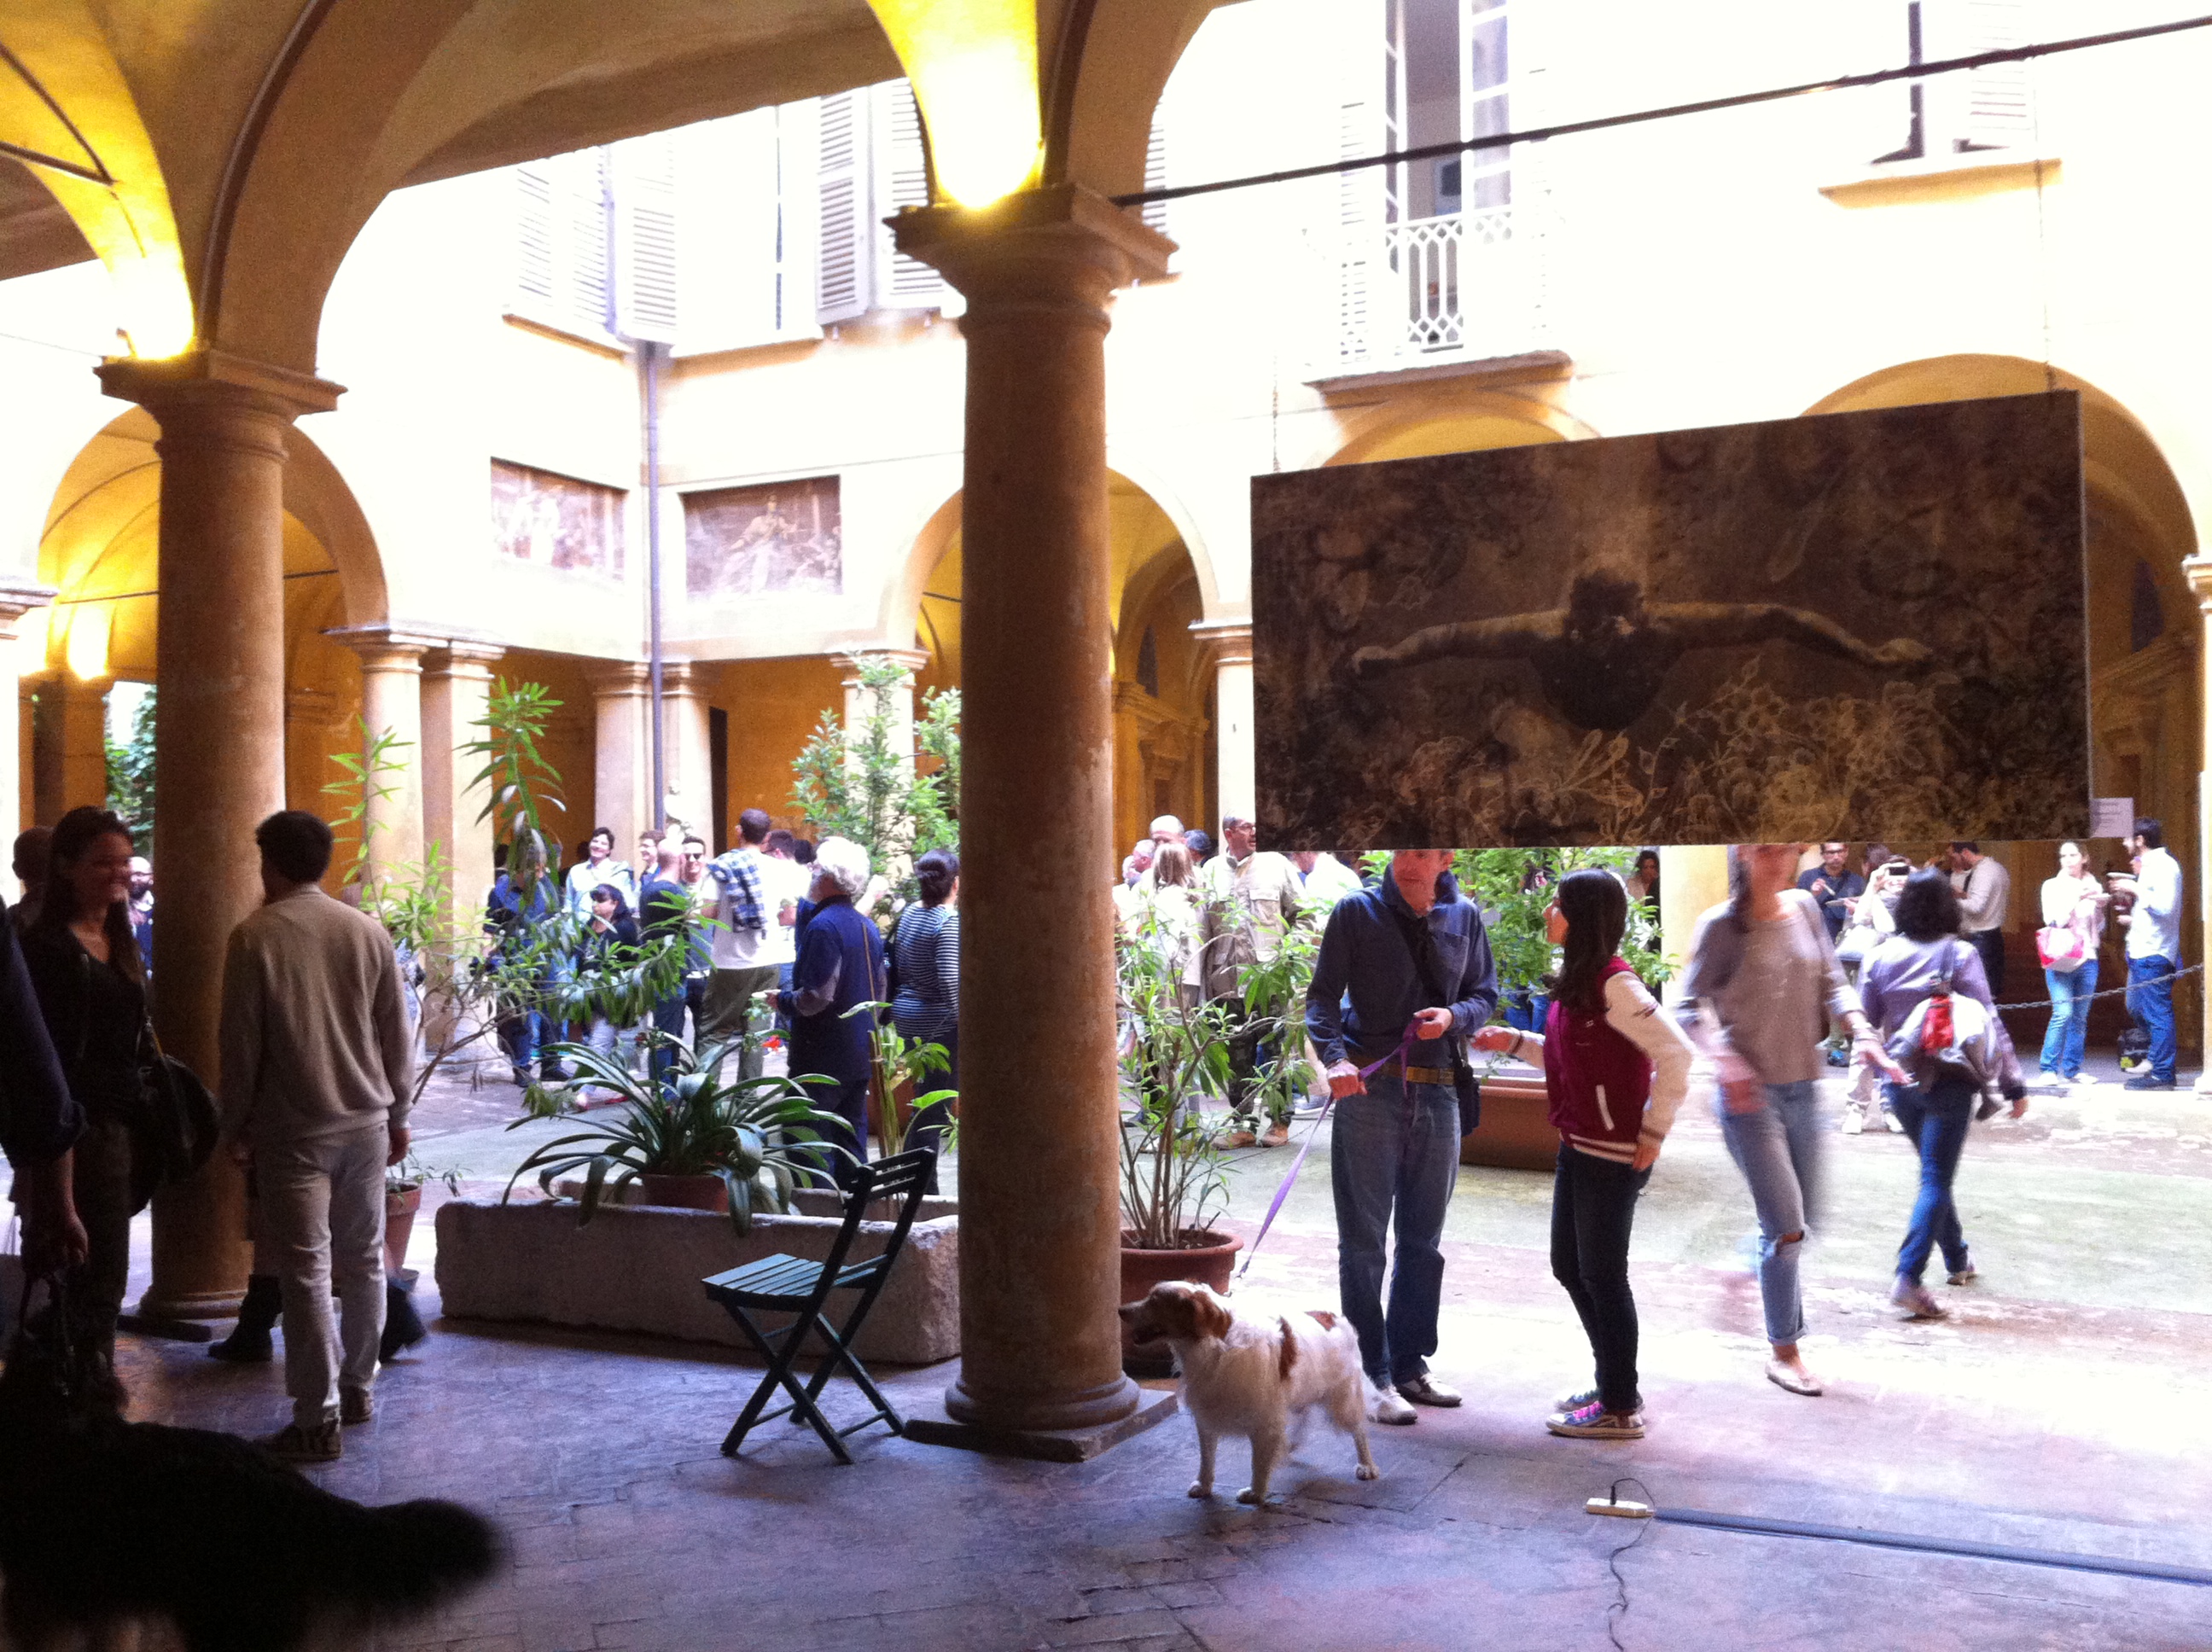 Palazzo Manenti reggio emilia apre le sue porte al pubblico